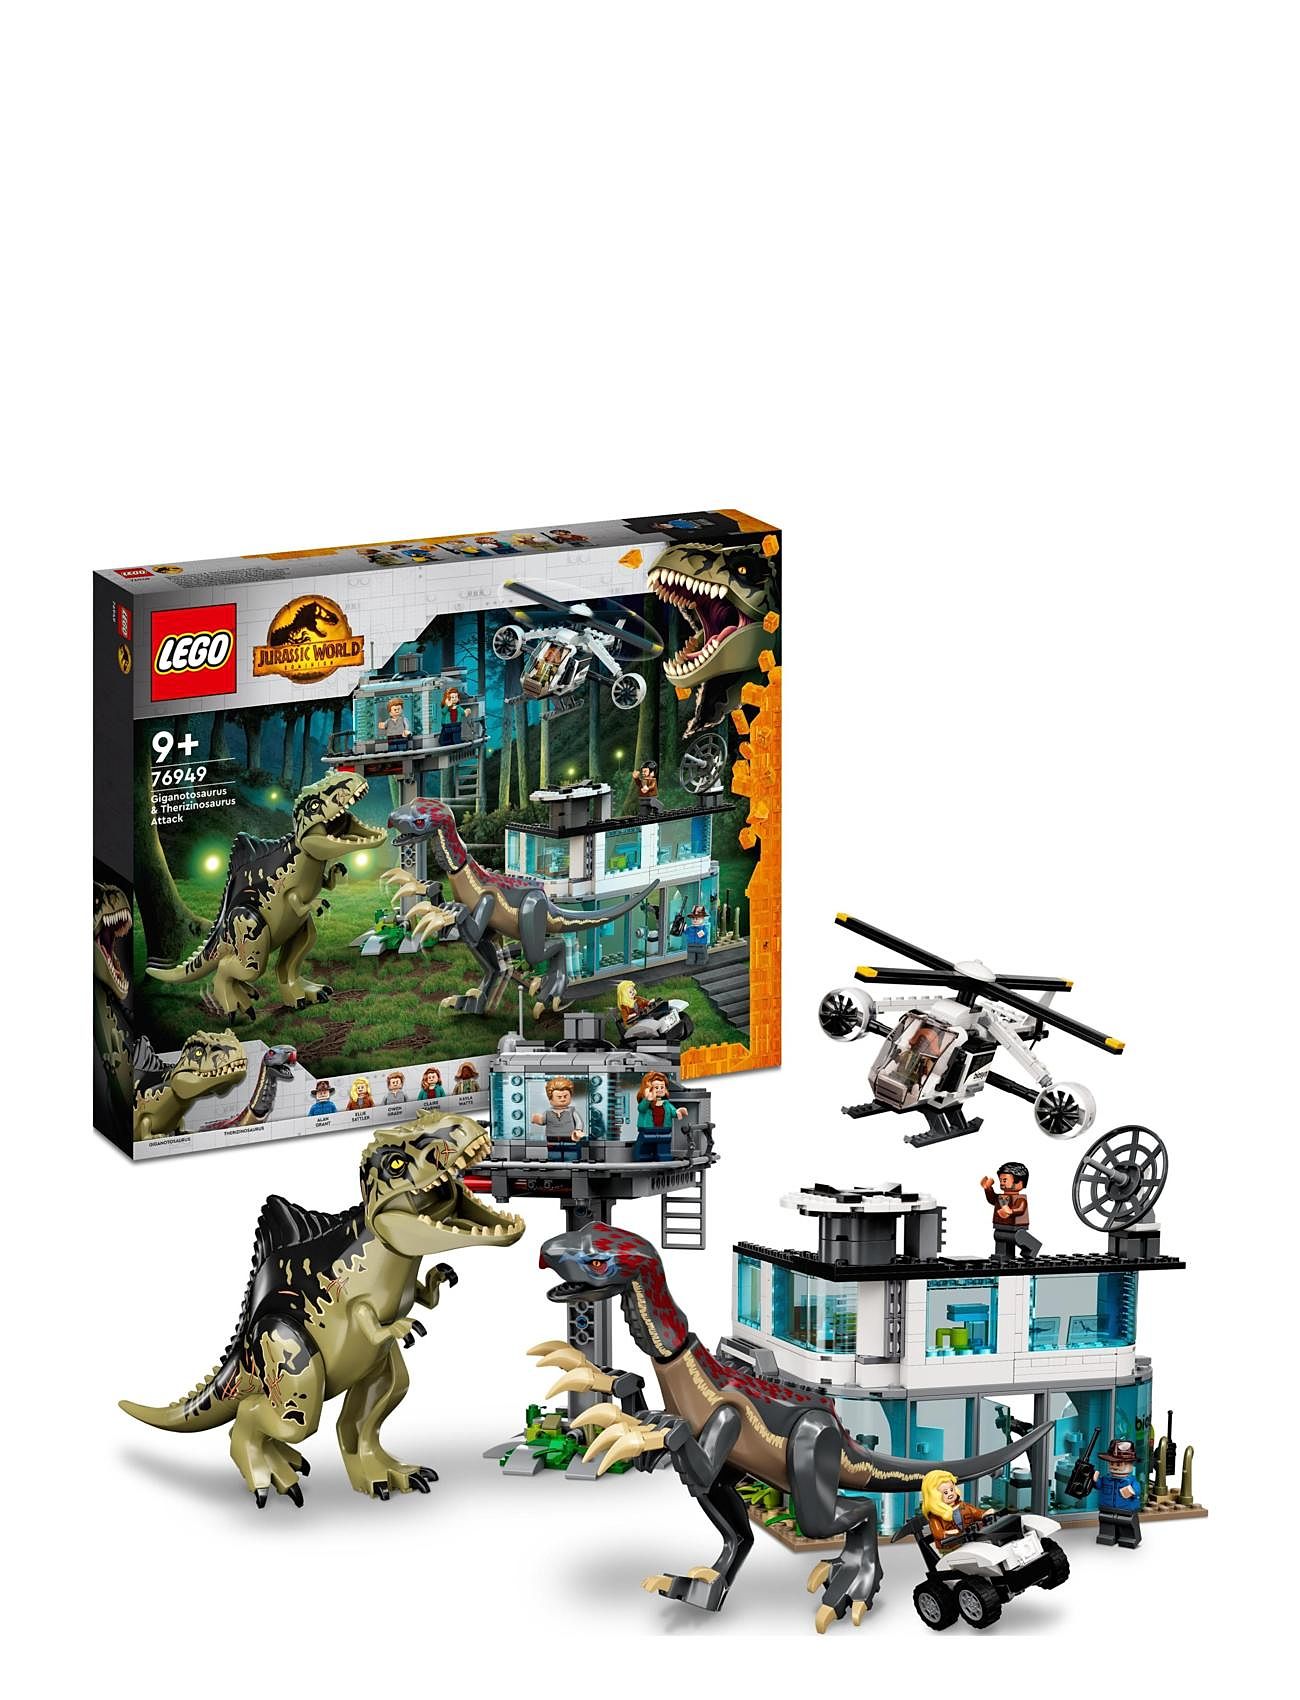 LEGO "Giganotosaurus Attack Dinosaur Toy Toys Lego jurassic World Multi/patterned LEGO"